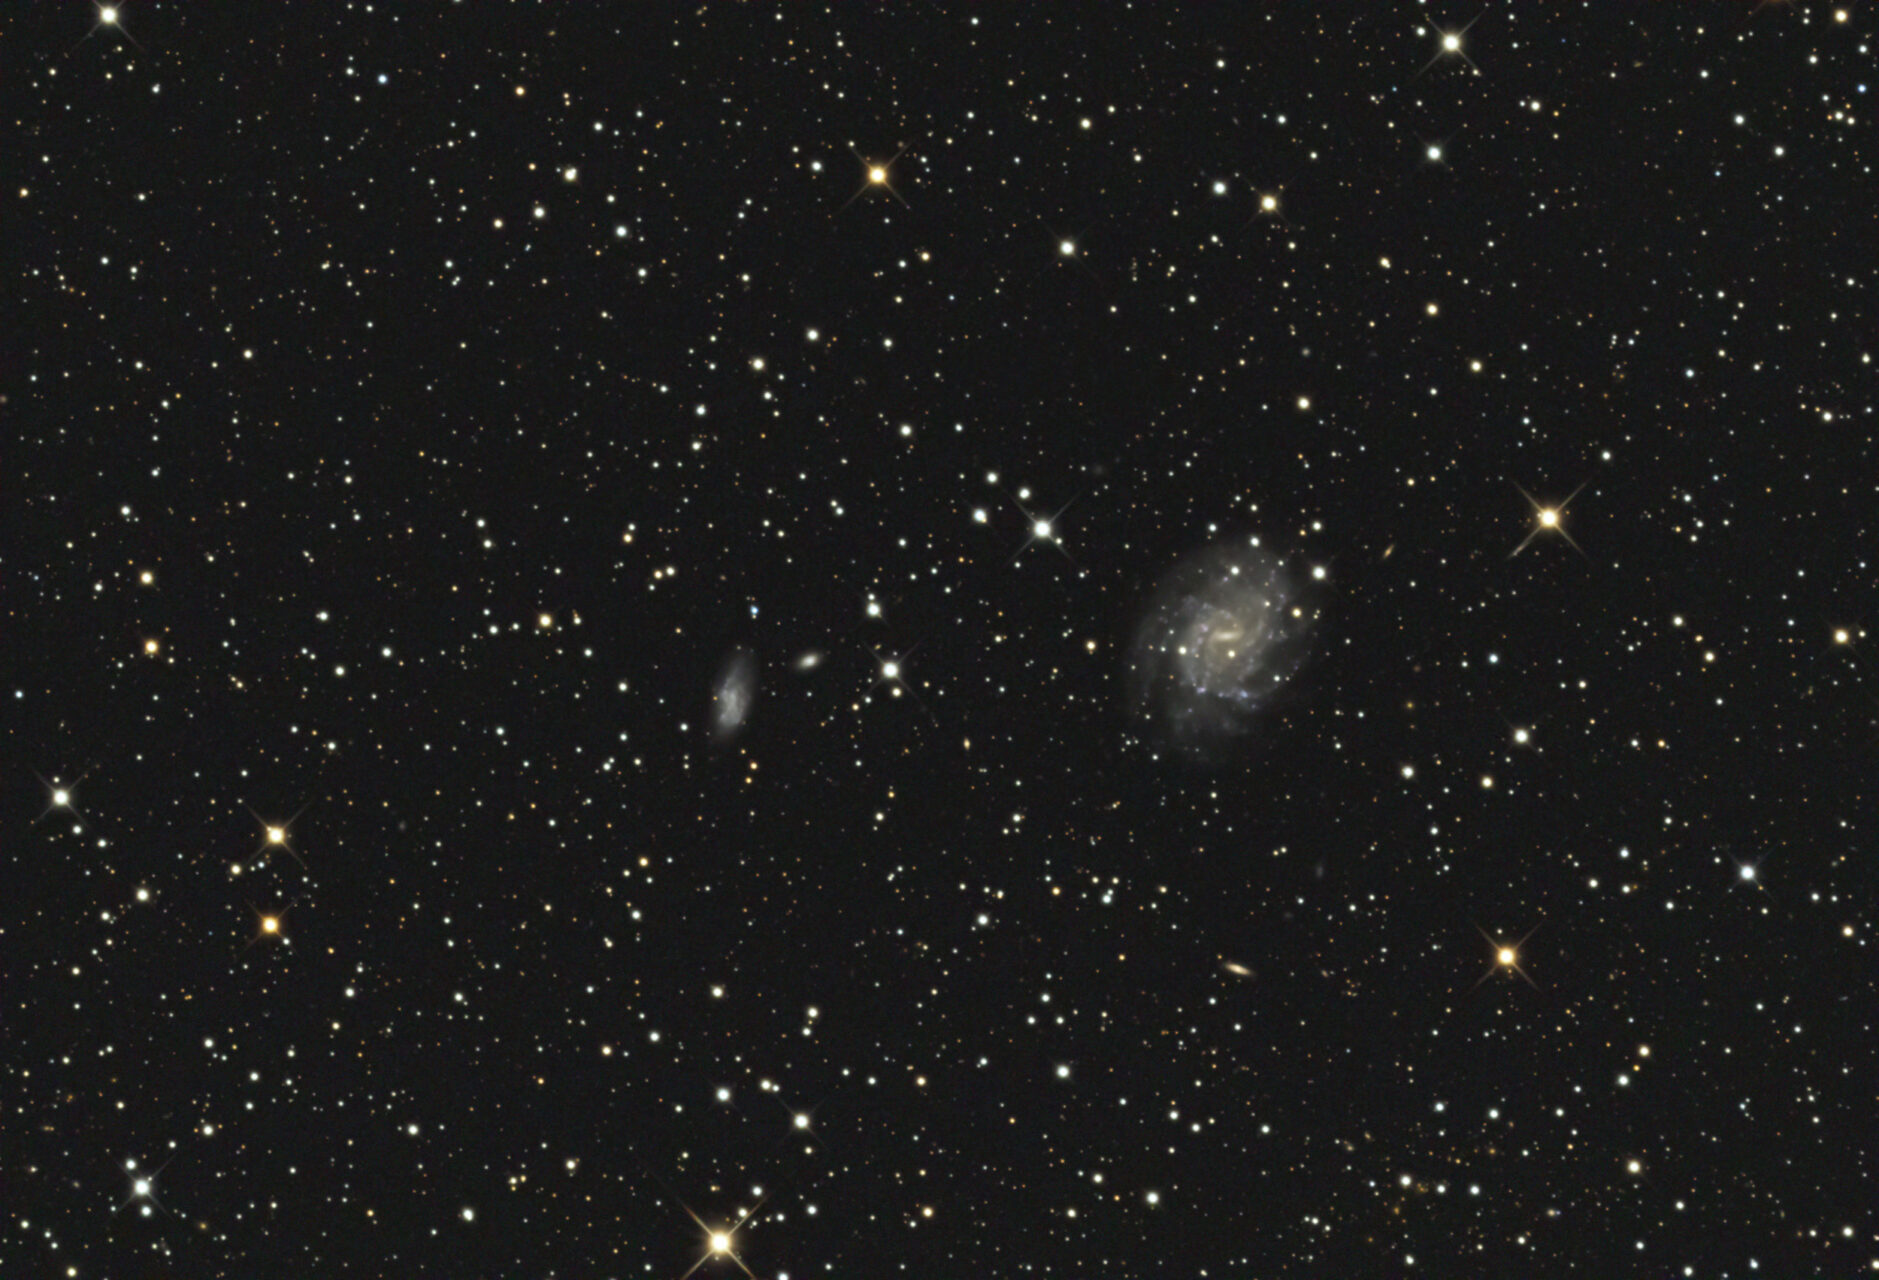 NGC 5556